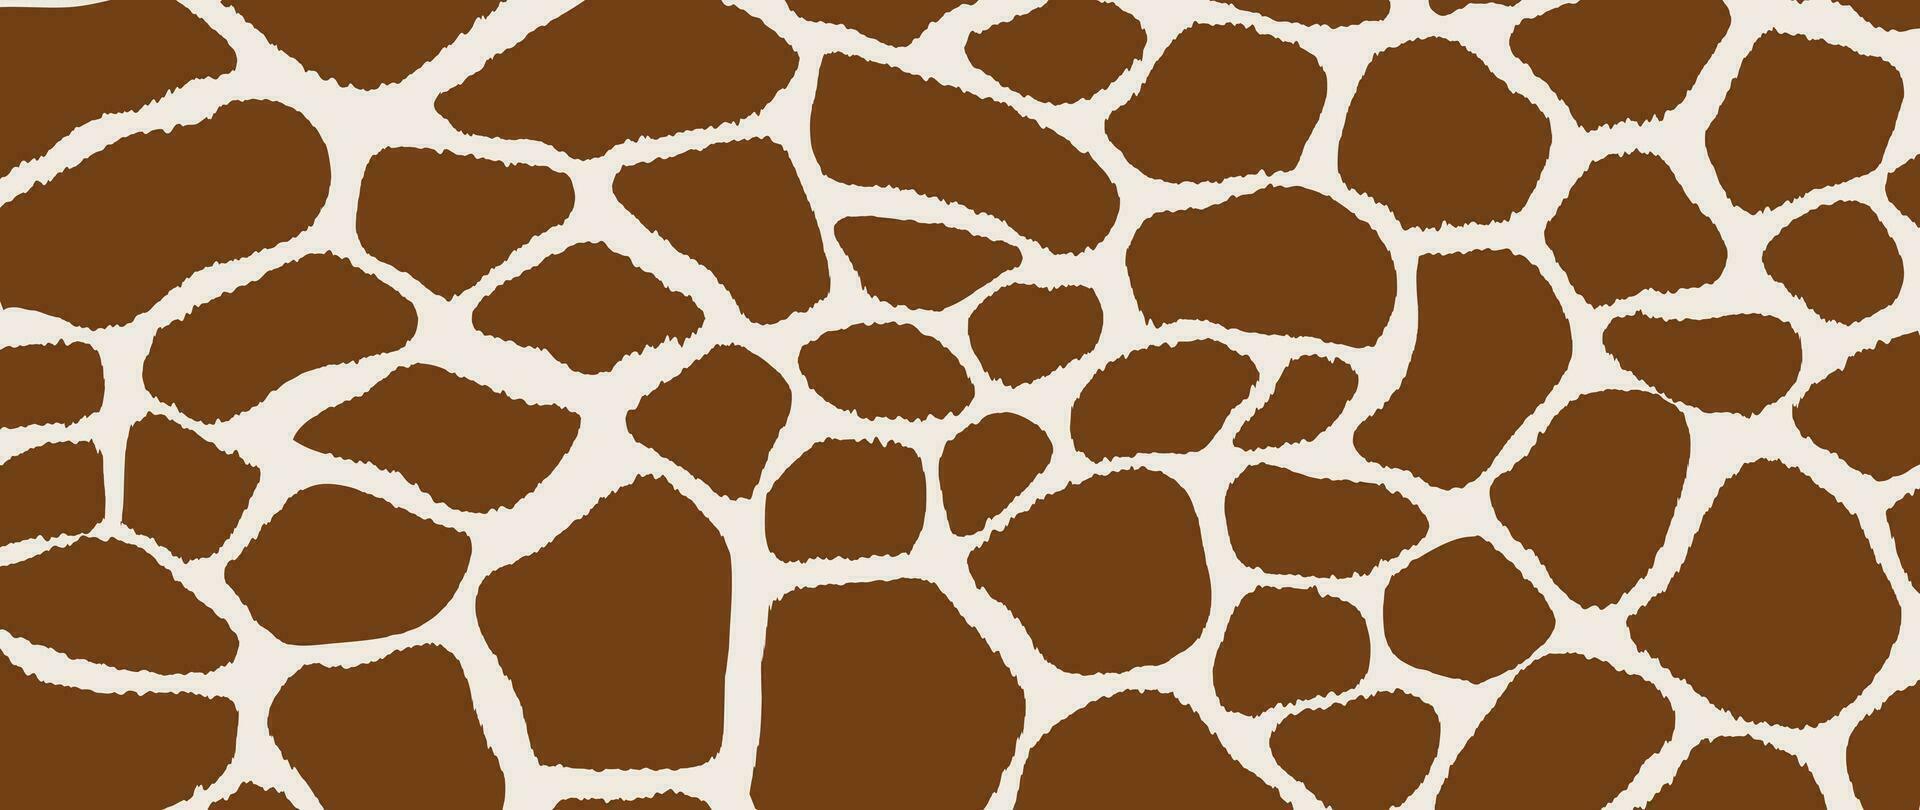 abstract giraffe huid patroon achtergrond. abstract kunst achtergrond vector ontwerp met dier huid, tekening. creatief illustratie voor kleding stof, afdrukken, omslag, omhulsel papier, textiel, behang.